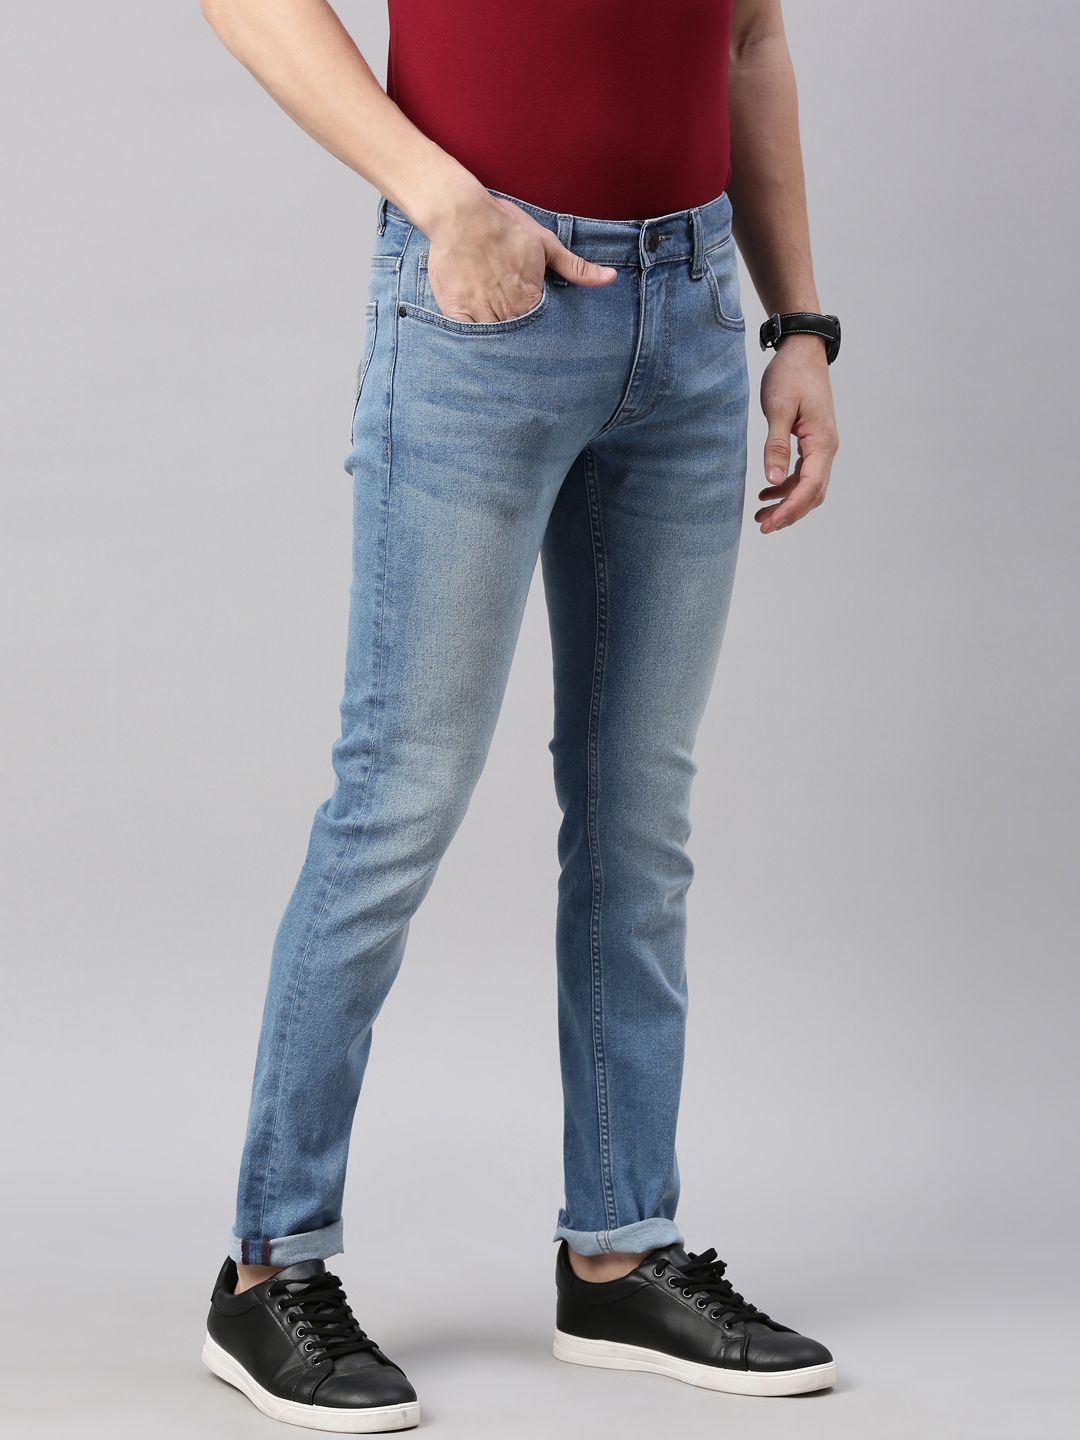 American Bull | American Bull Mens Solid Full length Denim Jeans 2